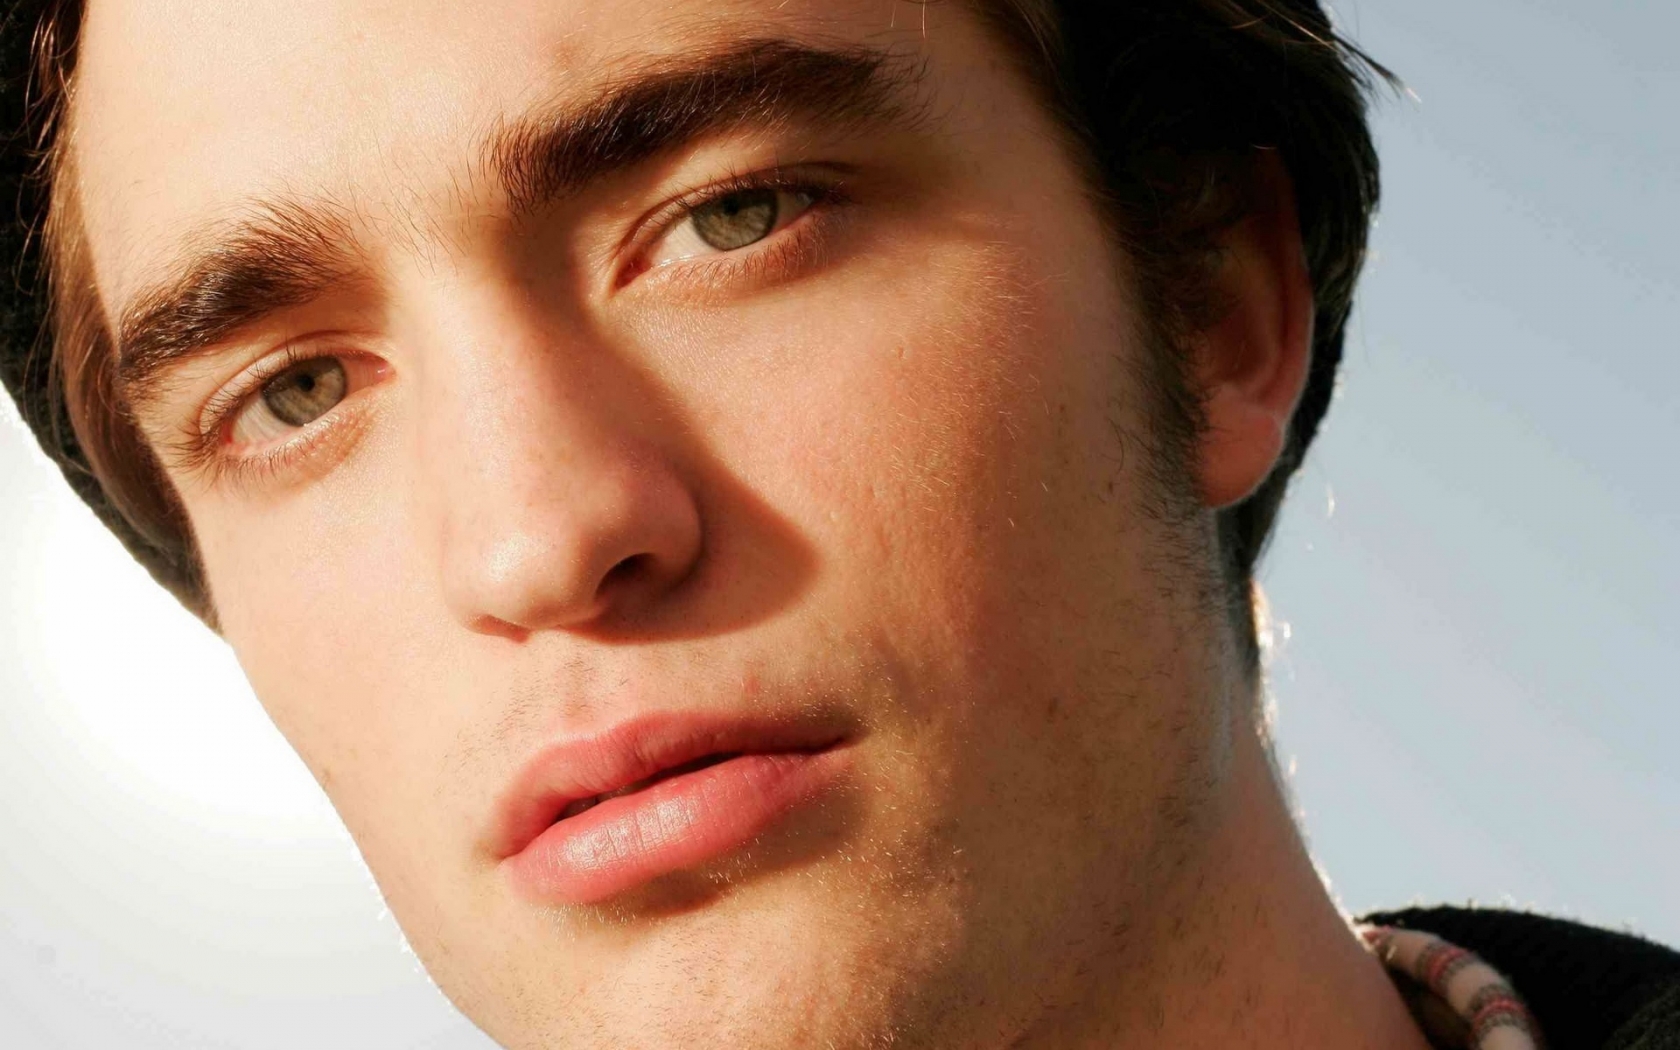 Robert Pattinson Close-up for 1680 x 1050 widescreen resolution